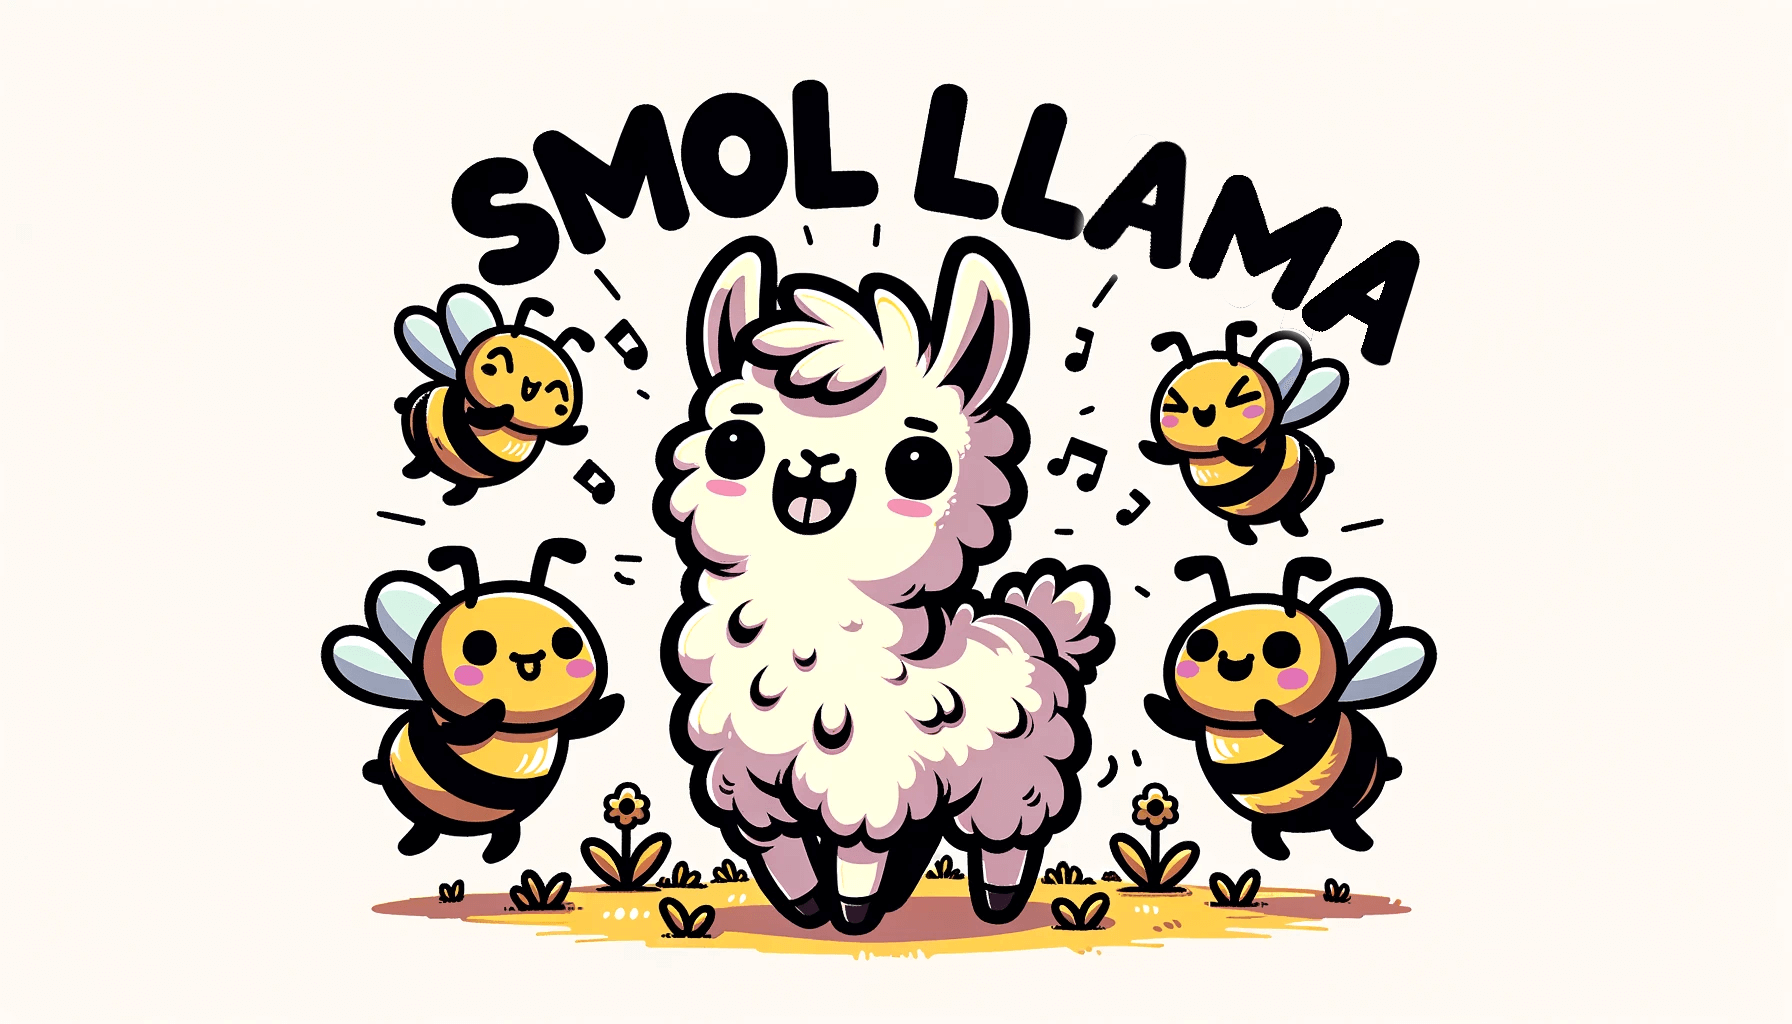 smol-llama-banner.png